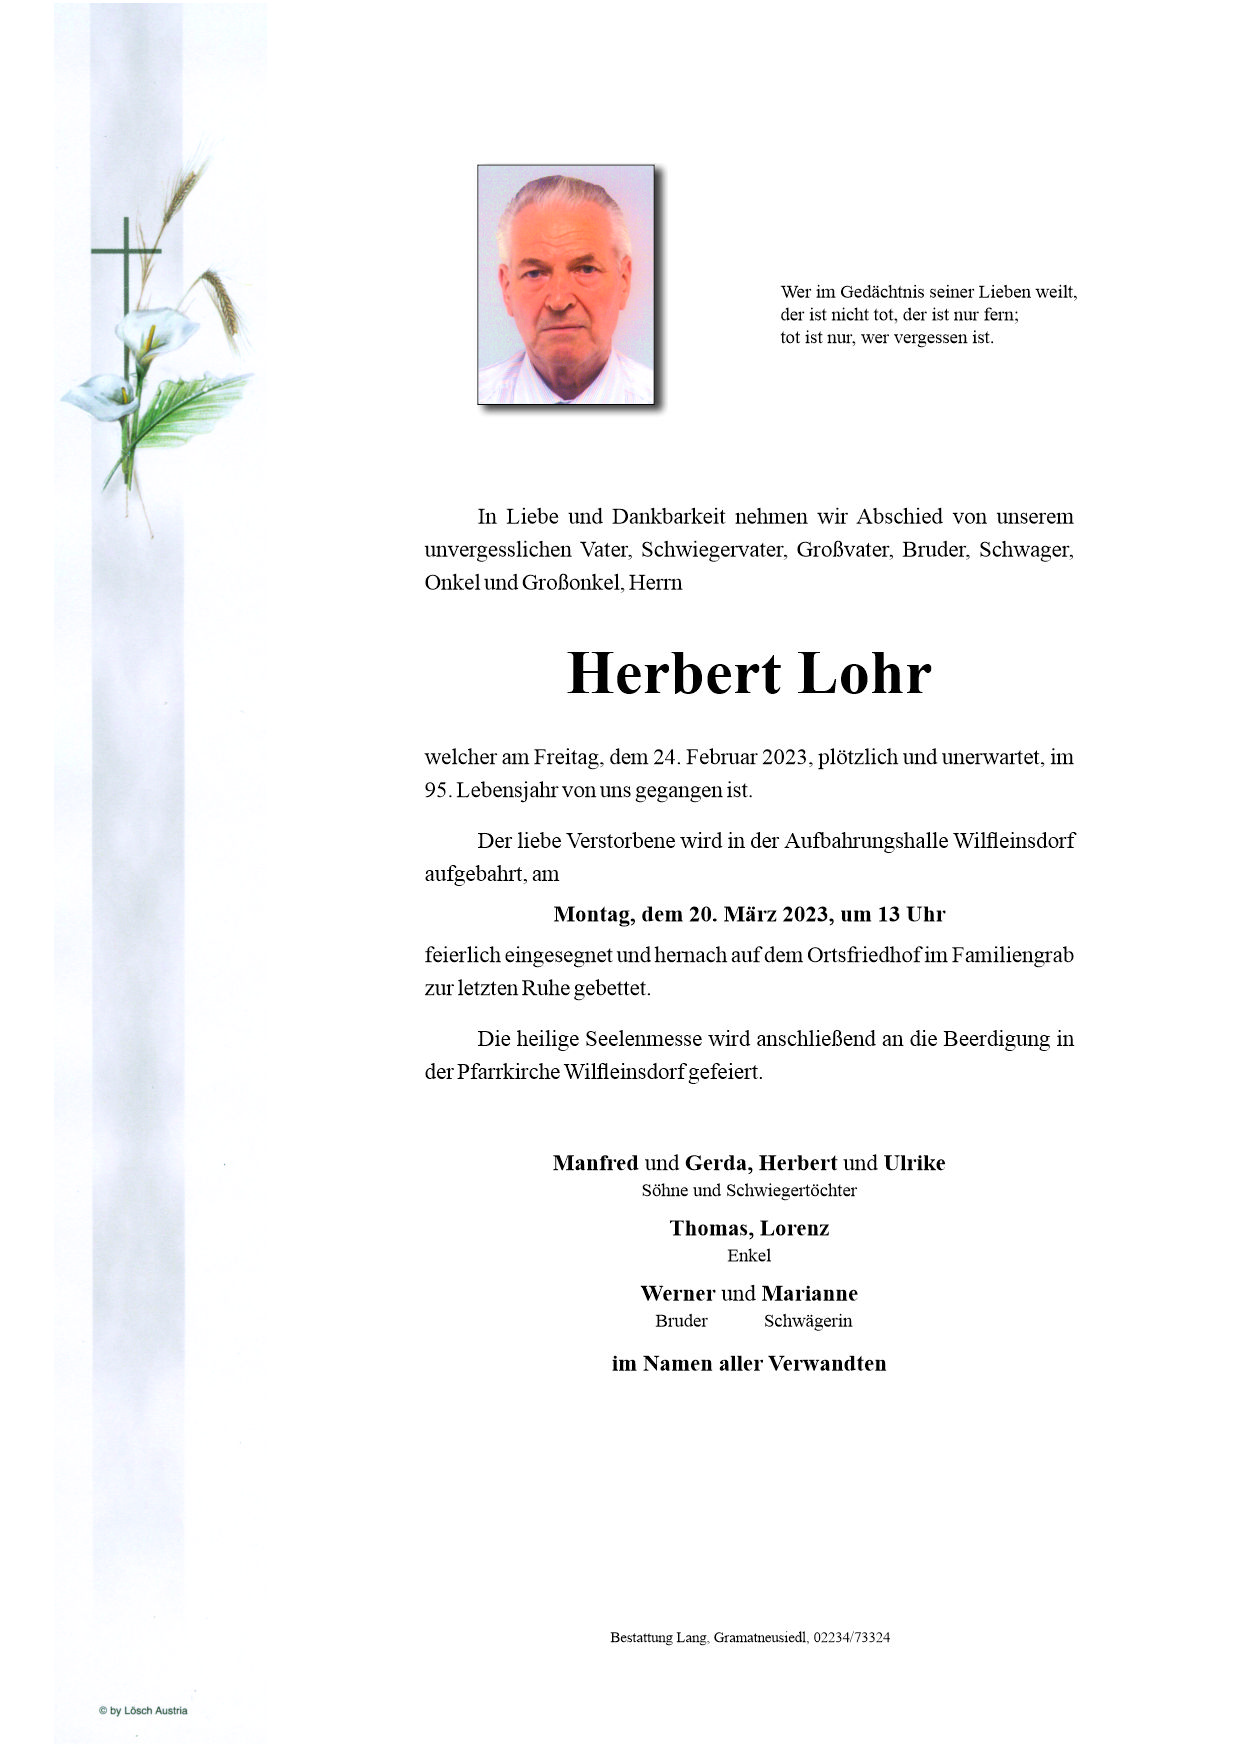 Herbert  Lohr